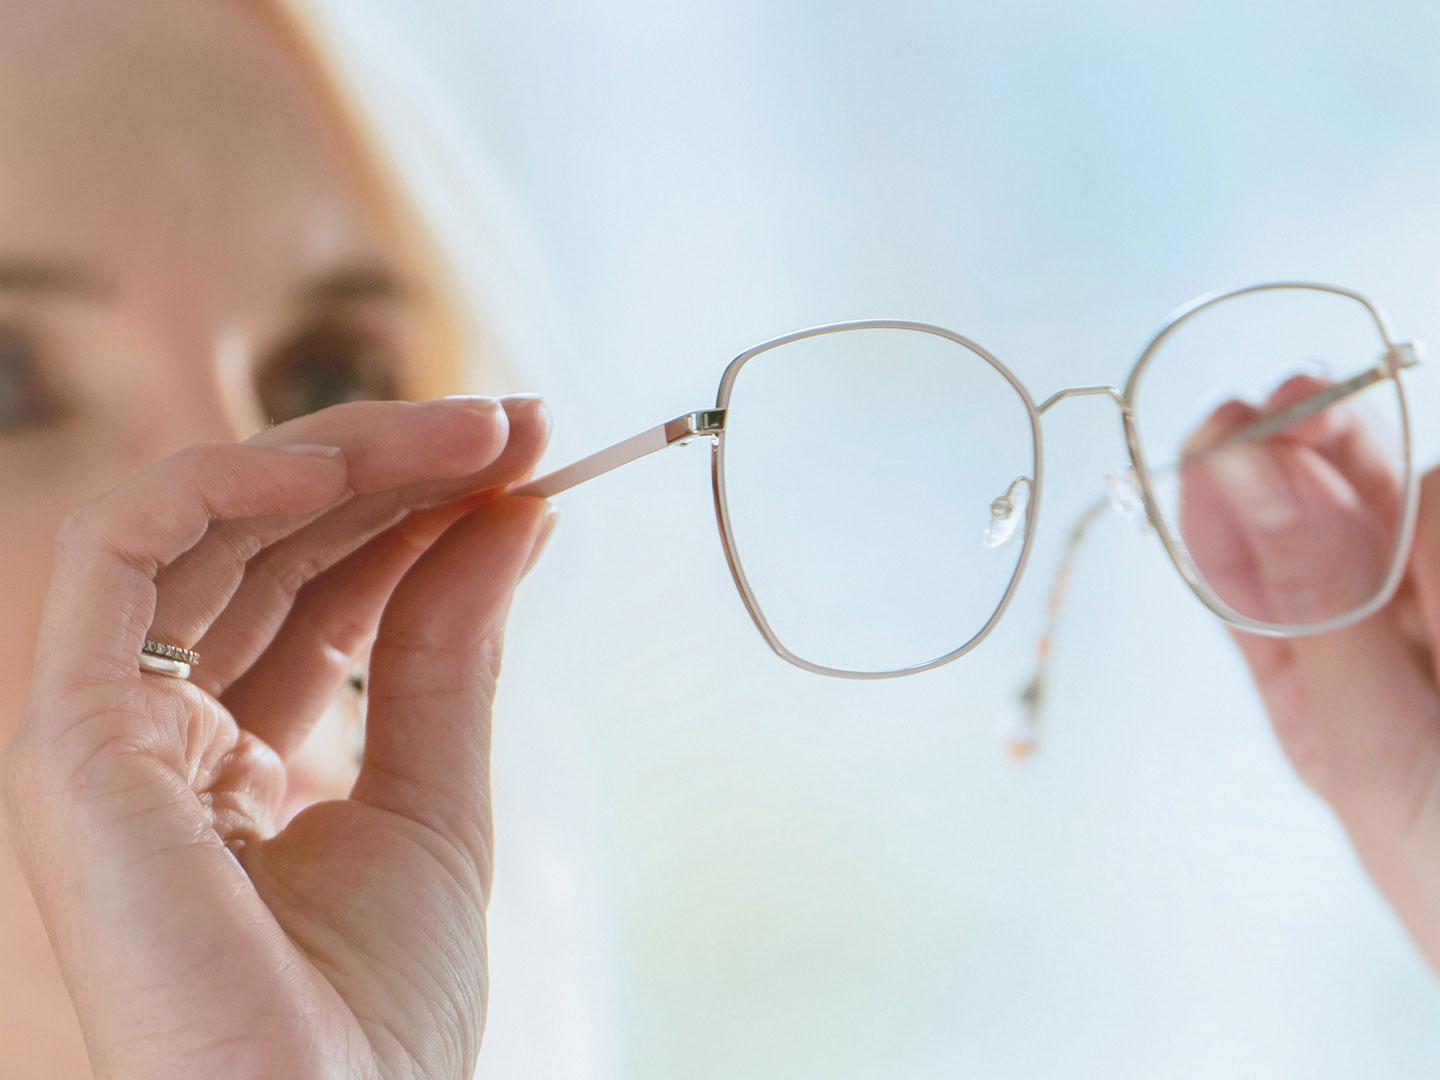 Uma mulher observando a parte interna dos óculos